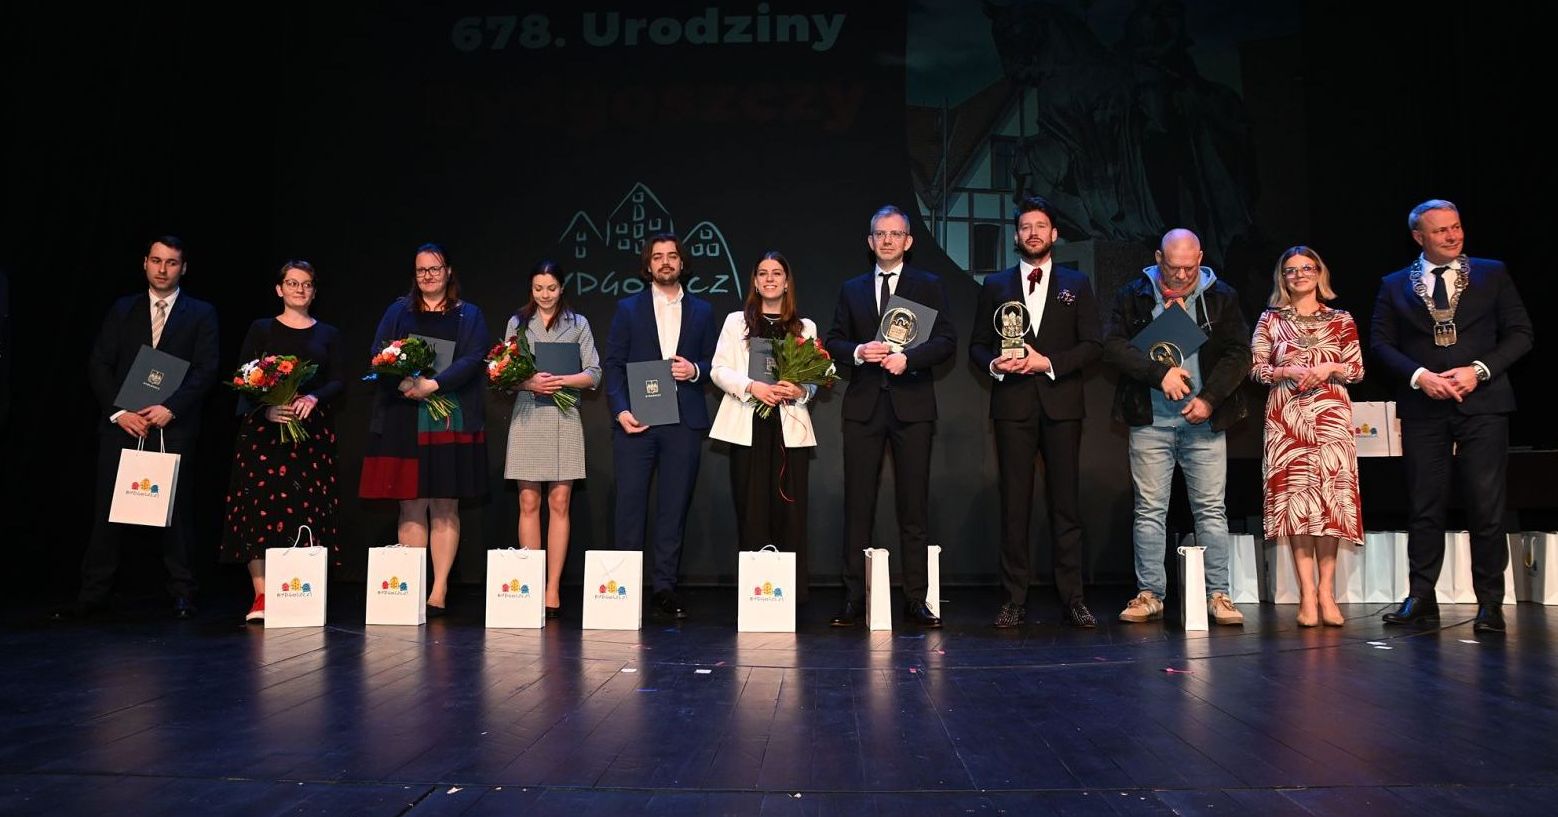 19 kwietnia Bydgoszcz świętowała swoje 678. urodziny, co było okazją do przyznania odznaczeń i nagród prezydenta miasta Nagrodzeni stoją w rzędzie na scenie i trzymają dyplomy, kwiaty lub statuetki.